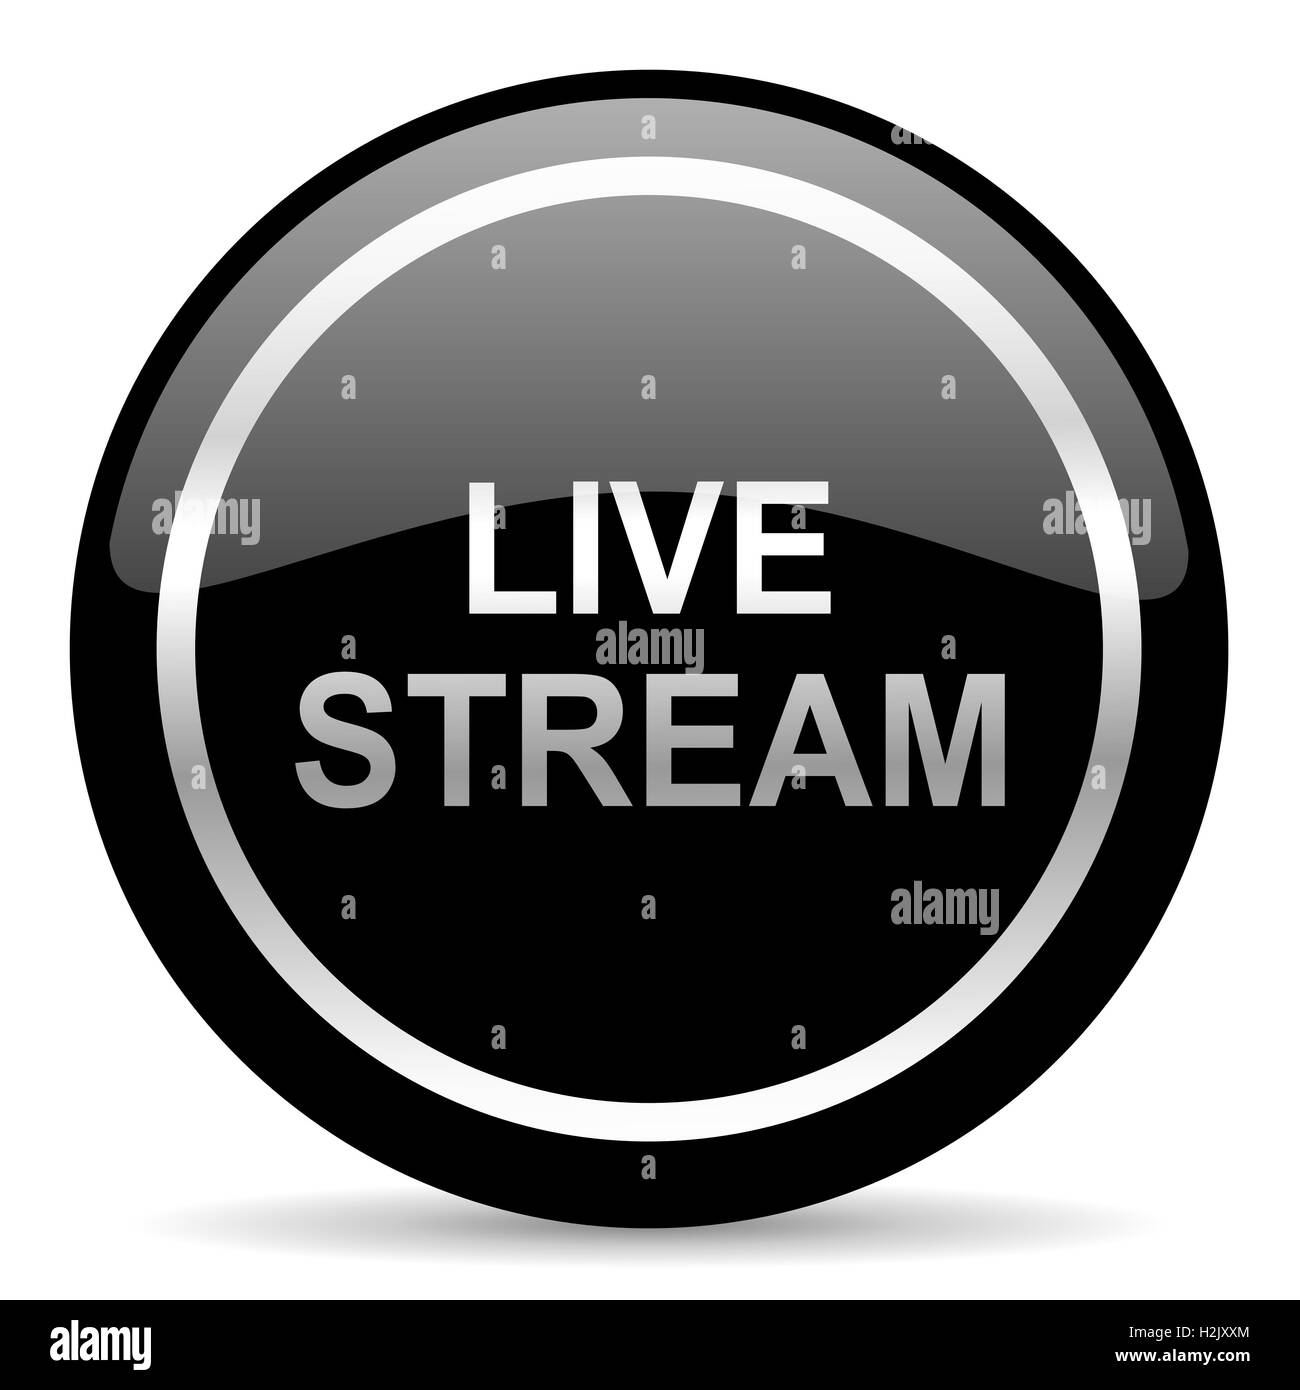 live stream icon Stock Photo - Alamy